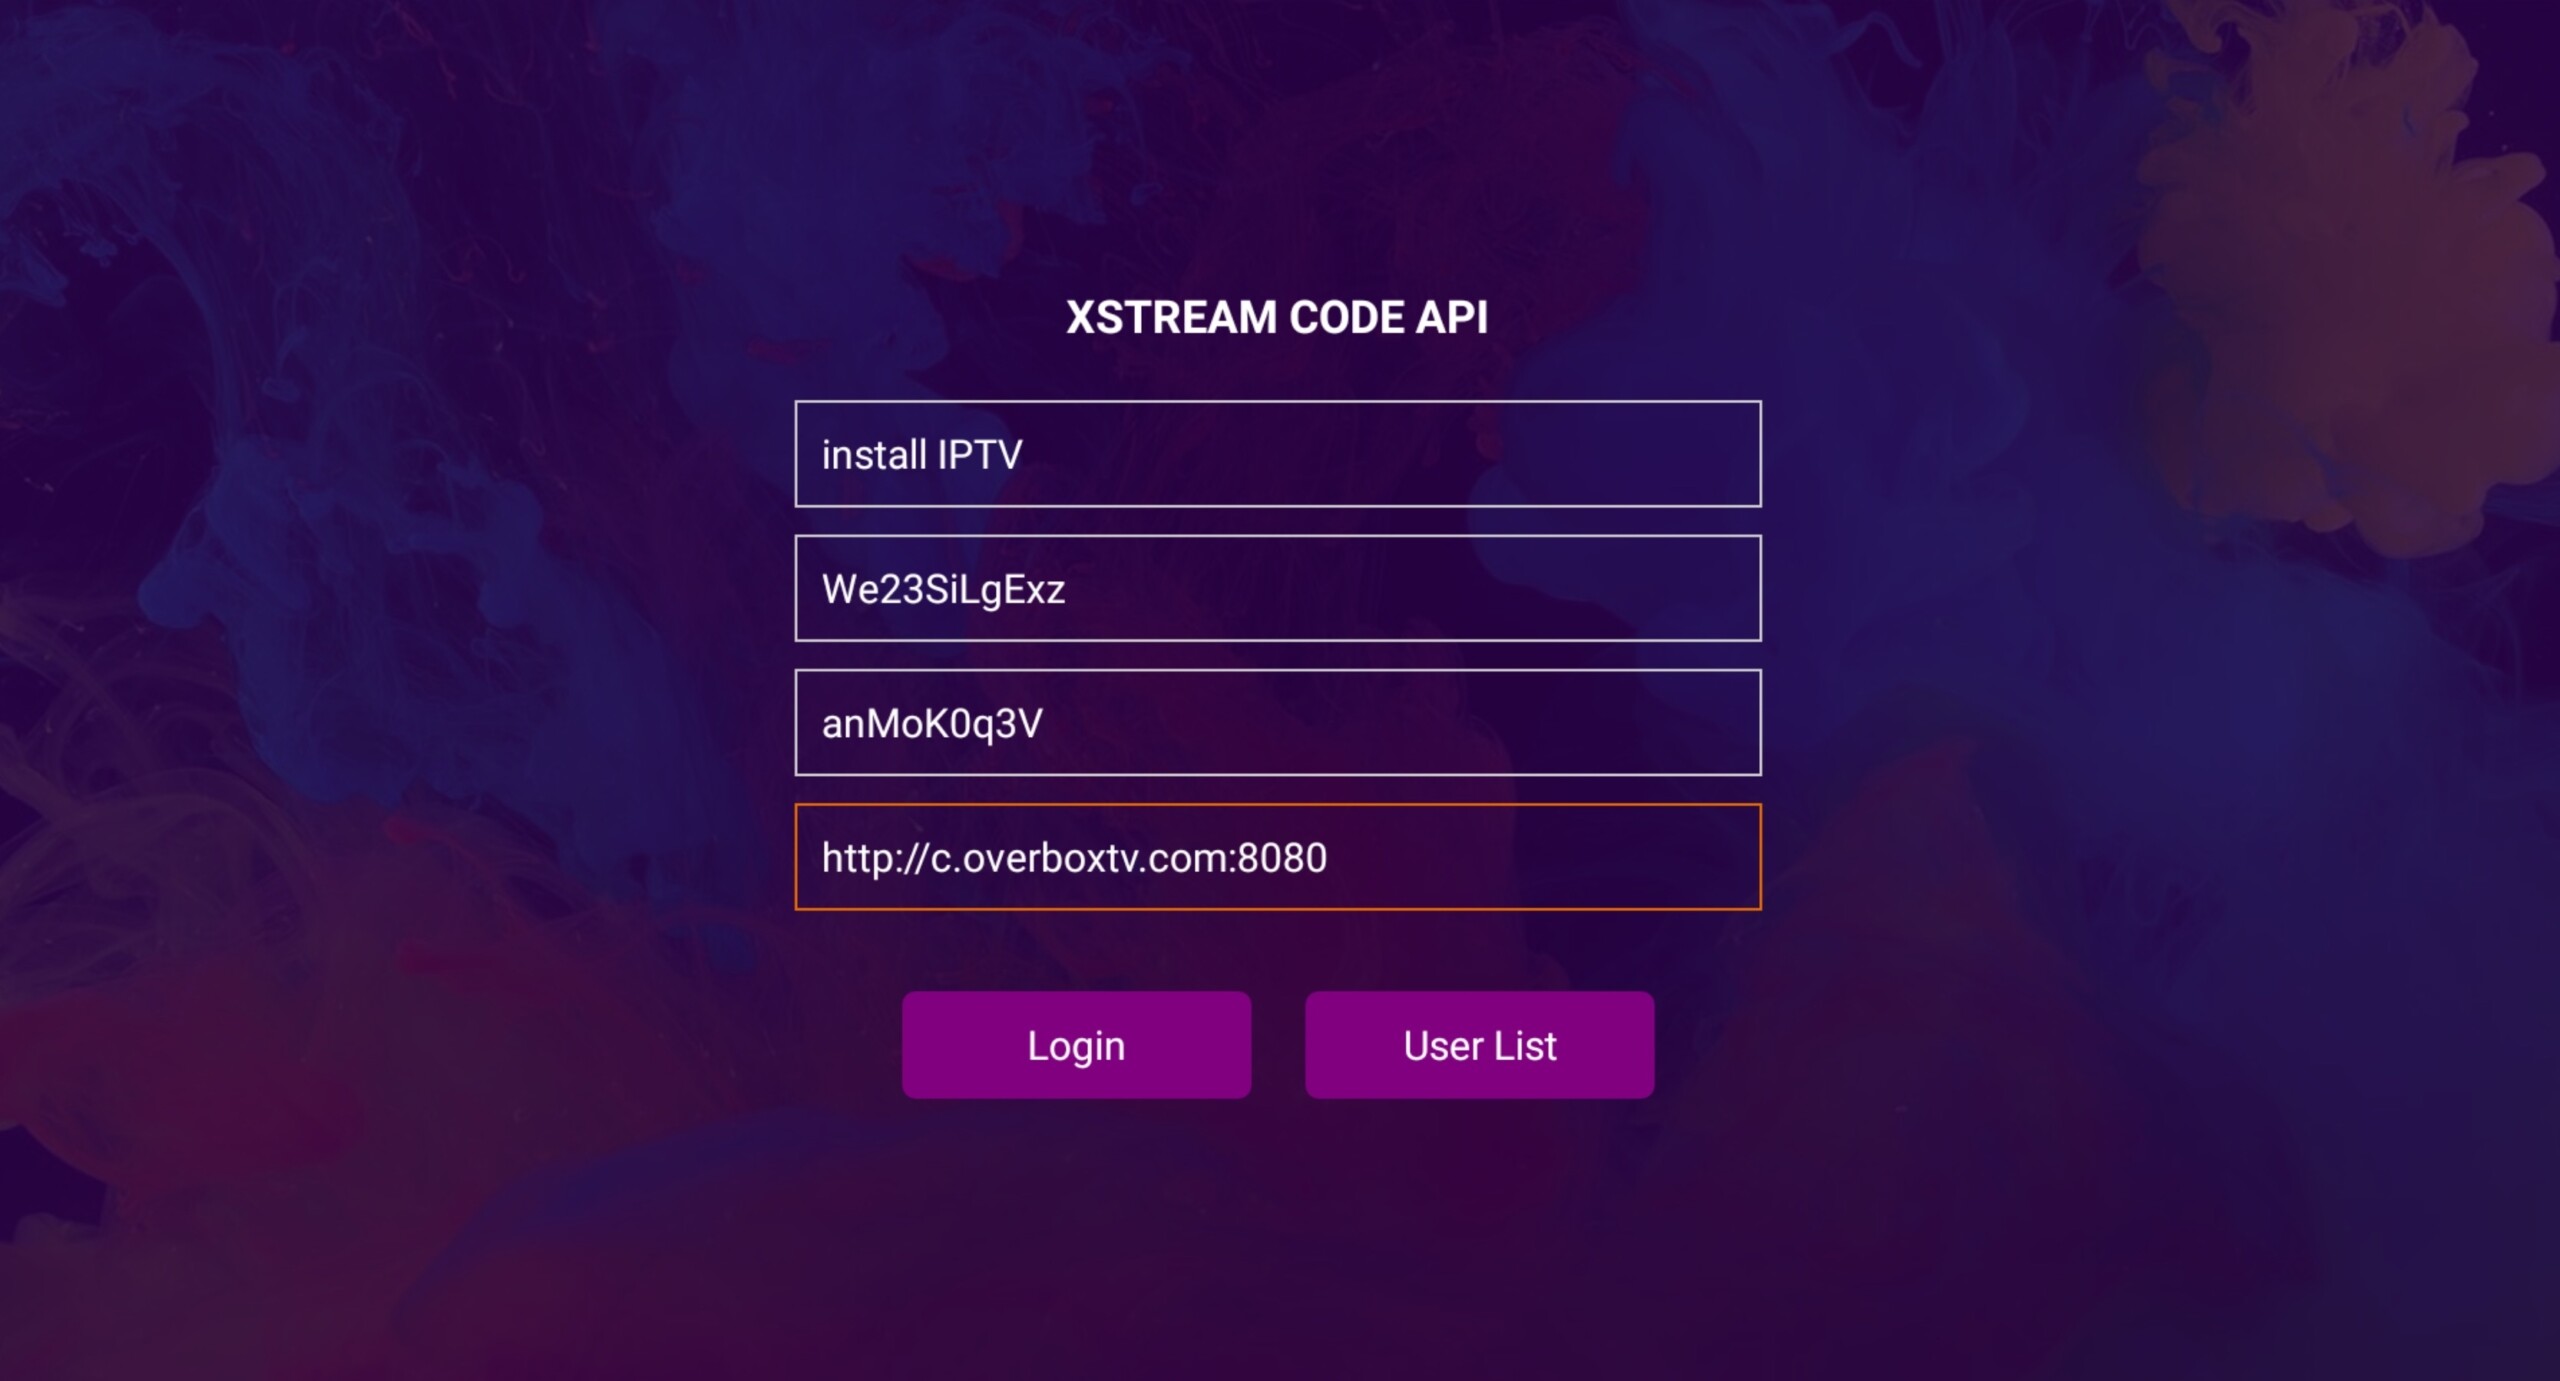 Enter Xtream details